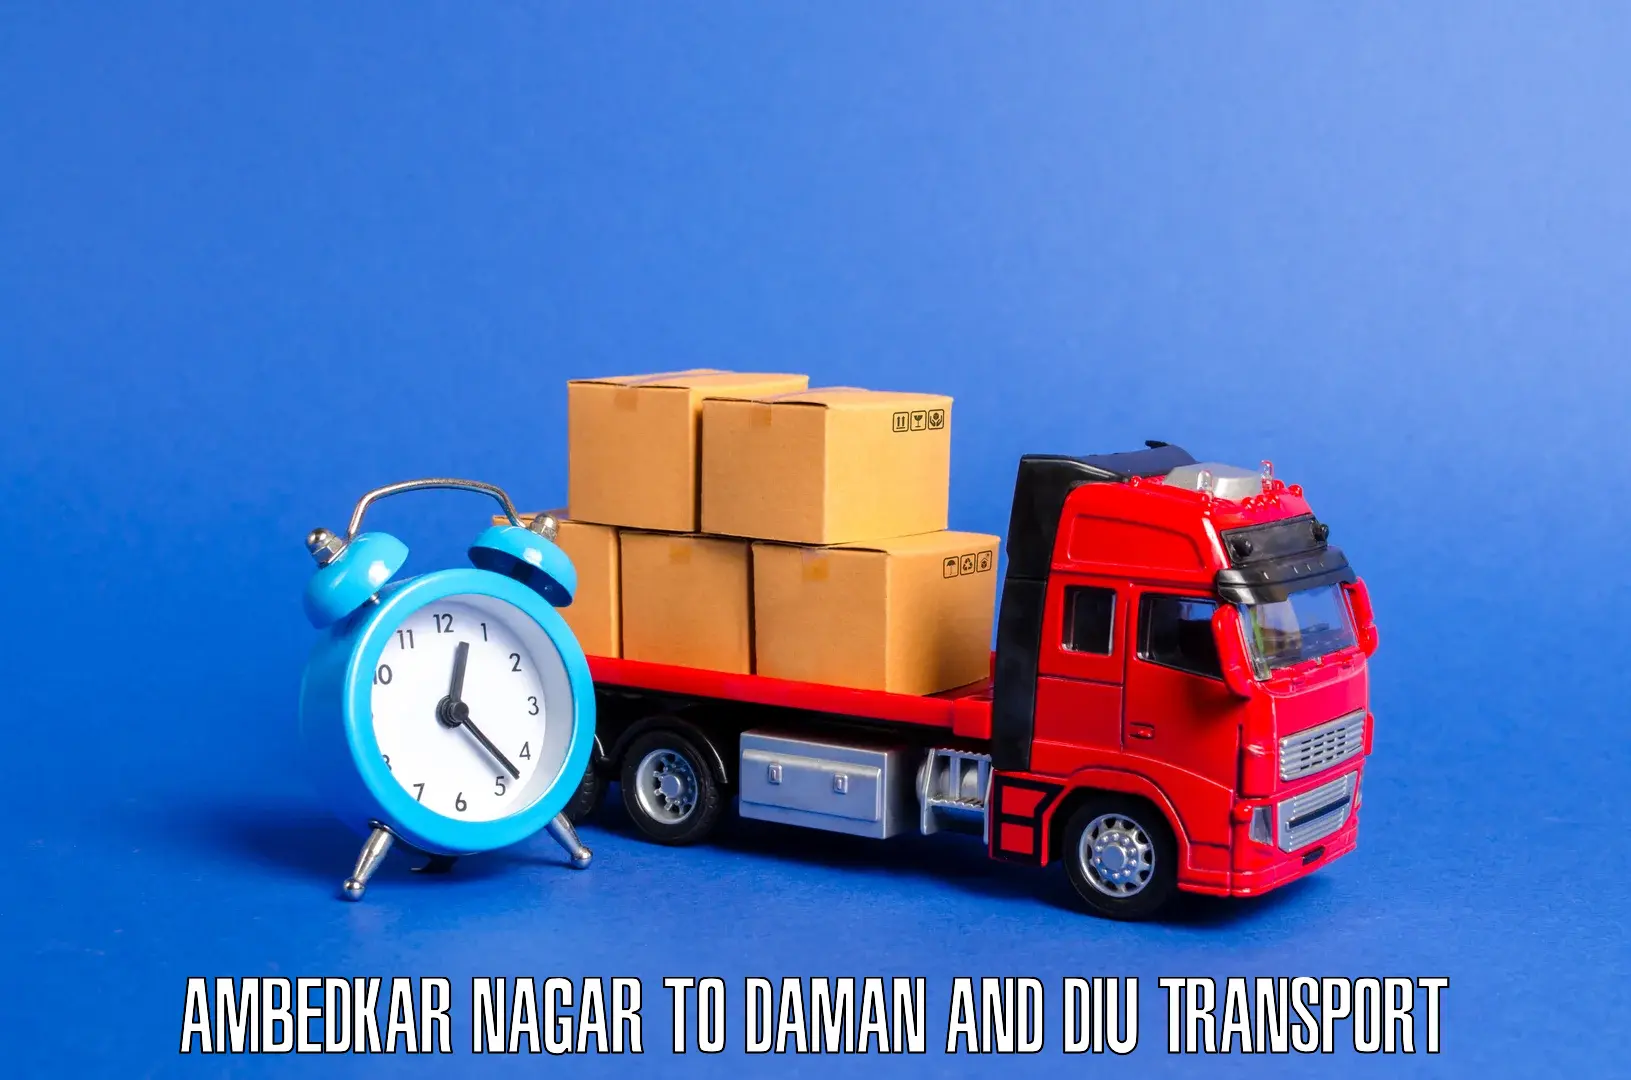 Cargo transportation services Ambedkar Nagar to Daman and Diu